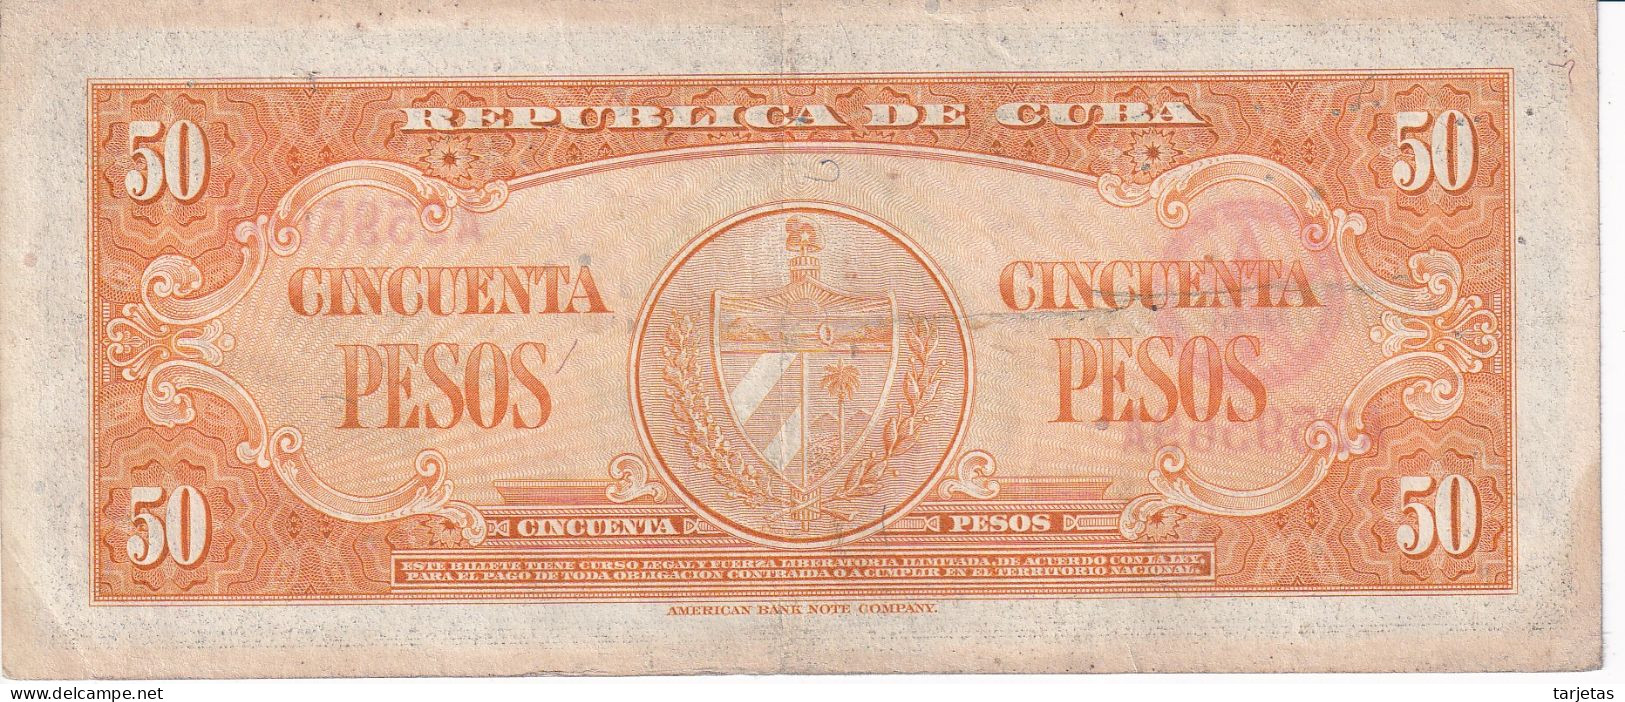 BILLETE DE CUBA DE 50 PESOS DEL AÑO 1950 DE CALIXTO GARCIA (BANKNOTE) - Cuba